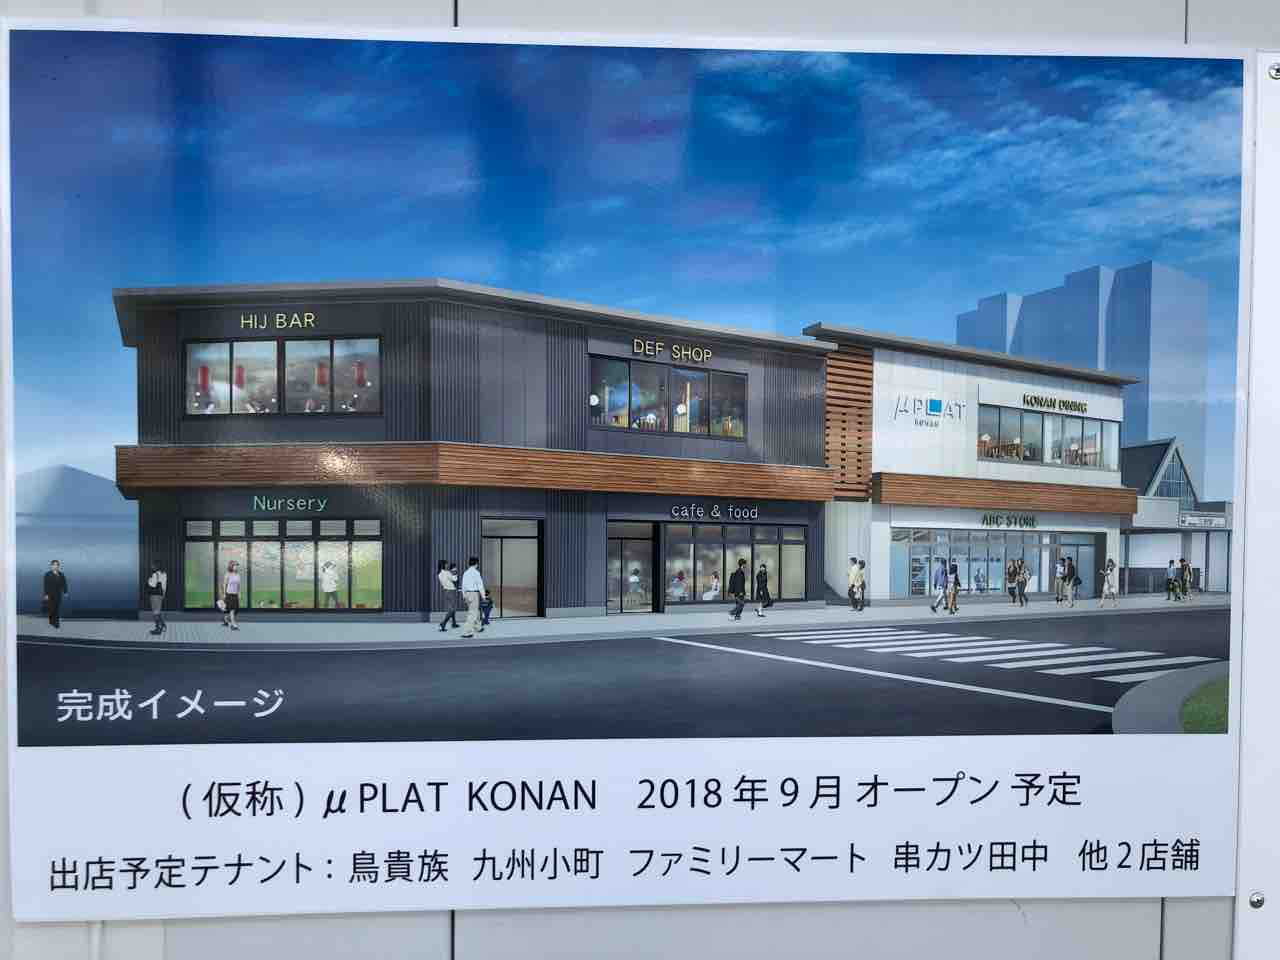 「μPLAT KONAN」9月にオープン予定